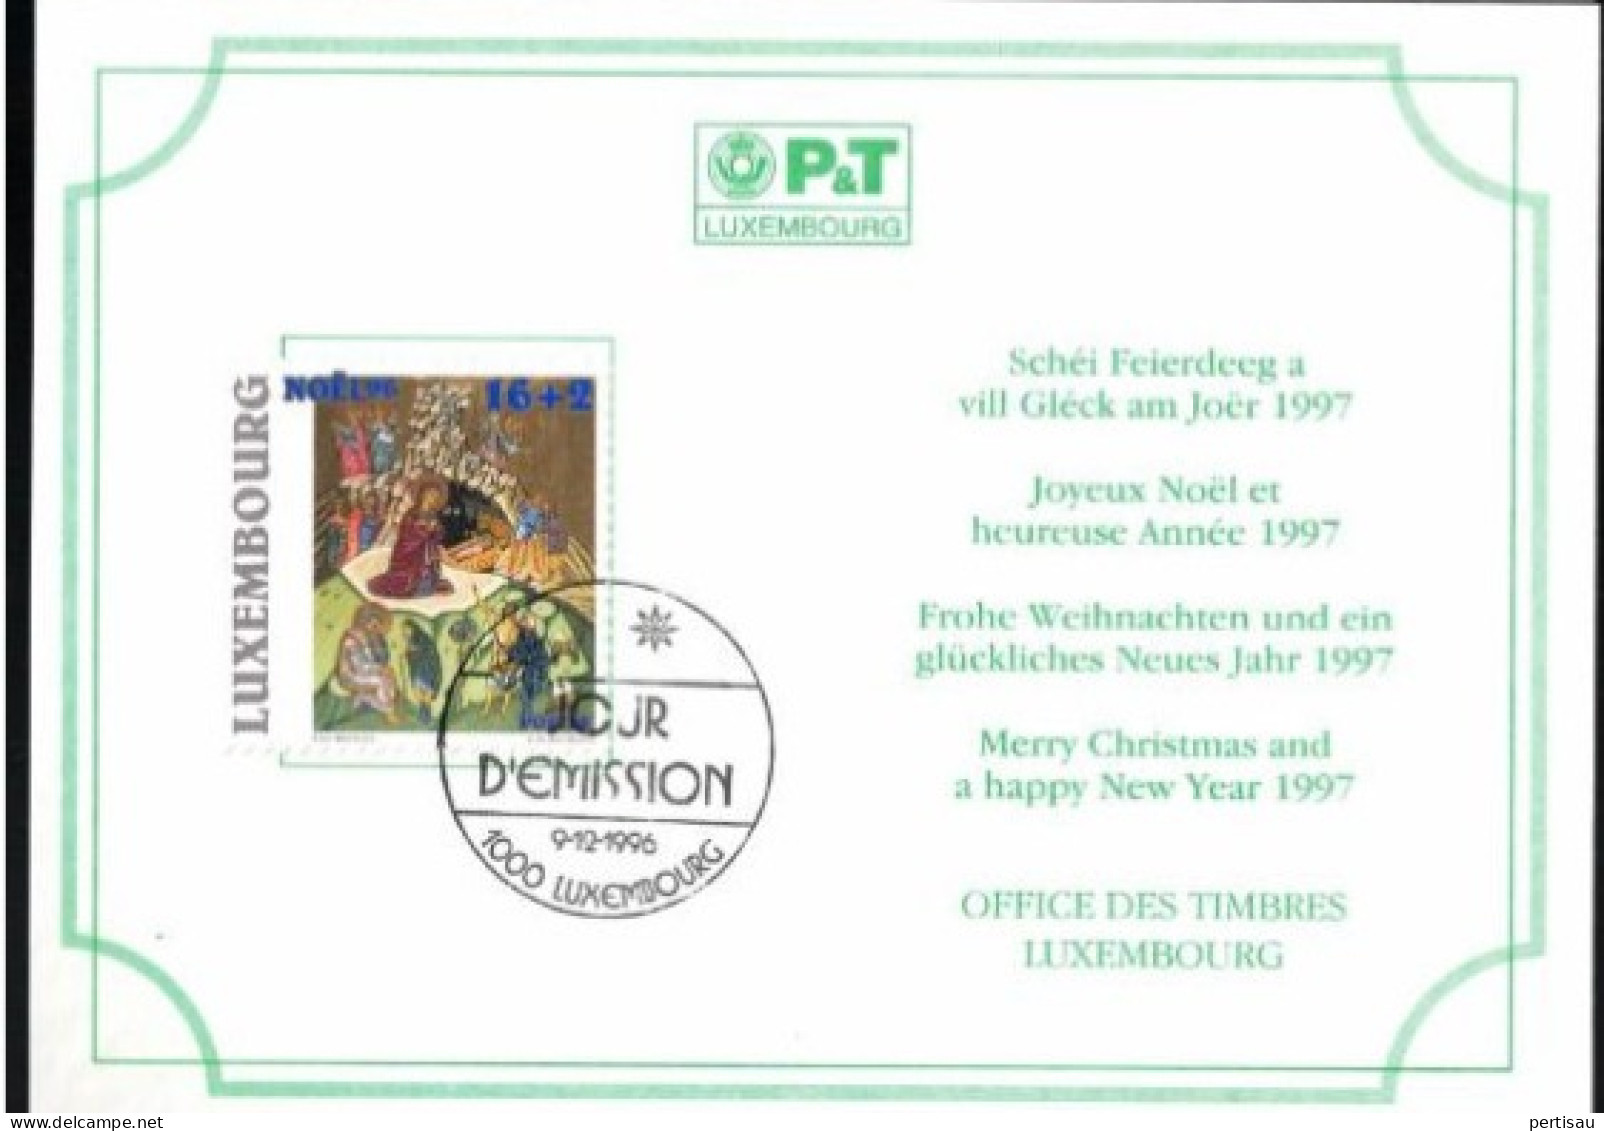 Wenskaart Joyeux Noel Et Heureuse Annee 1997 Speciale Afstempeling 1996 - Cartoline Commemorative